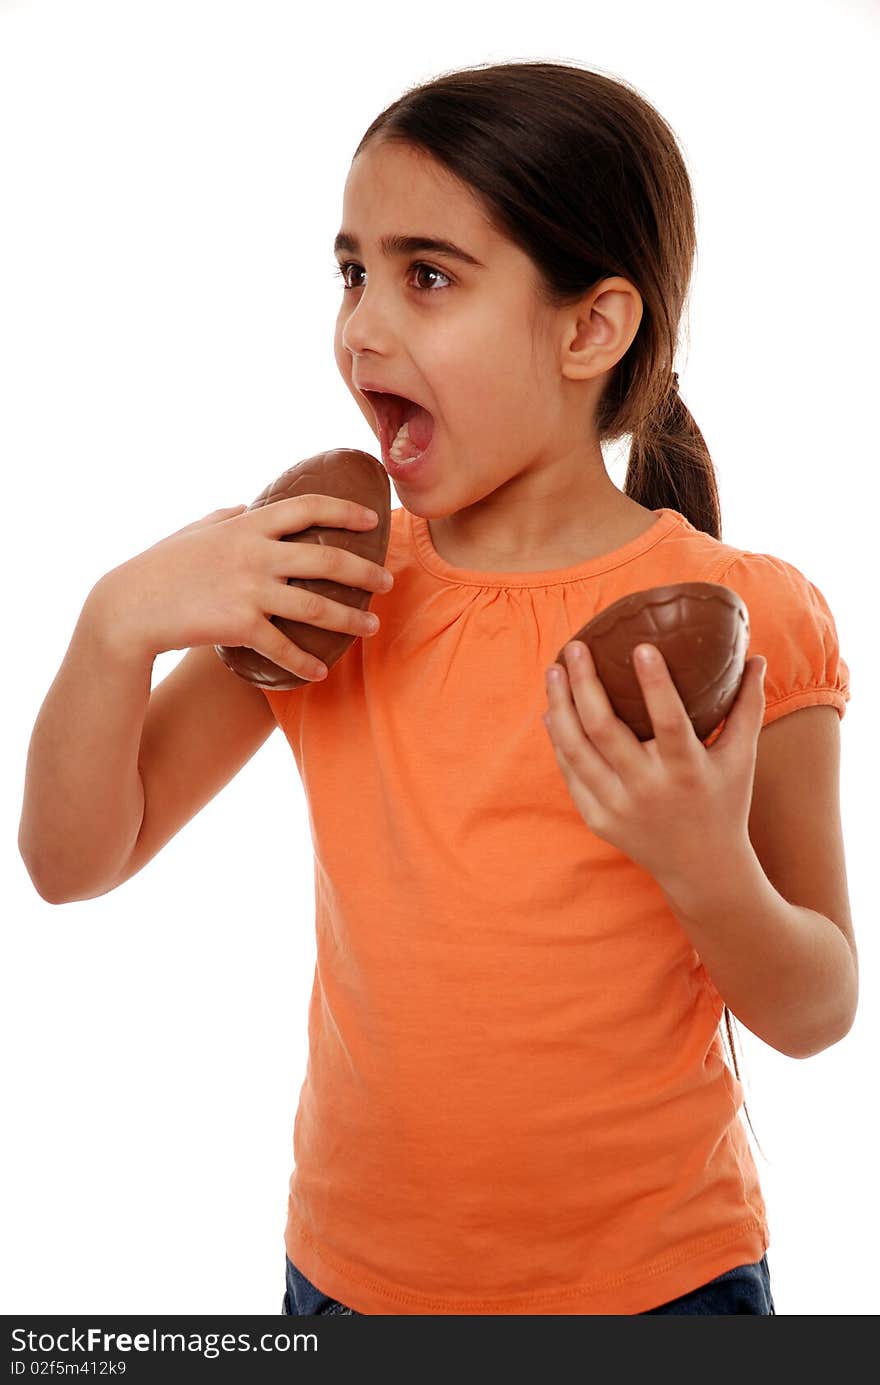 Girl eating Easter egg treat isolated on white